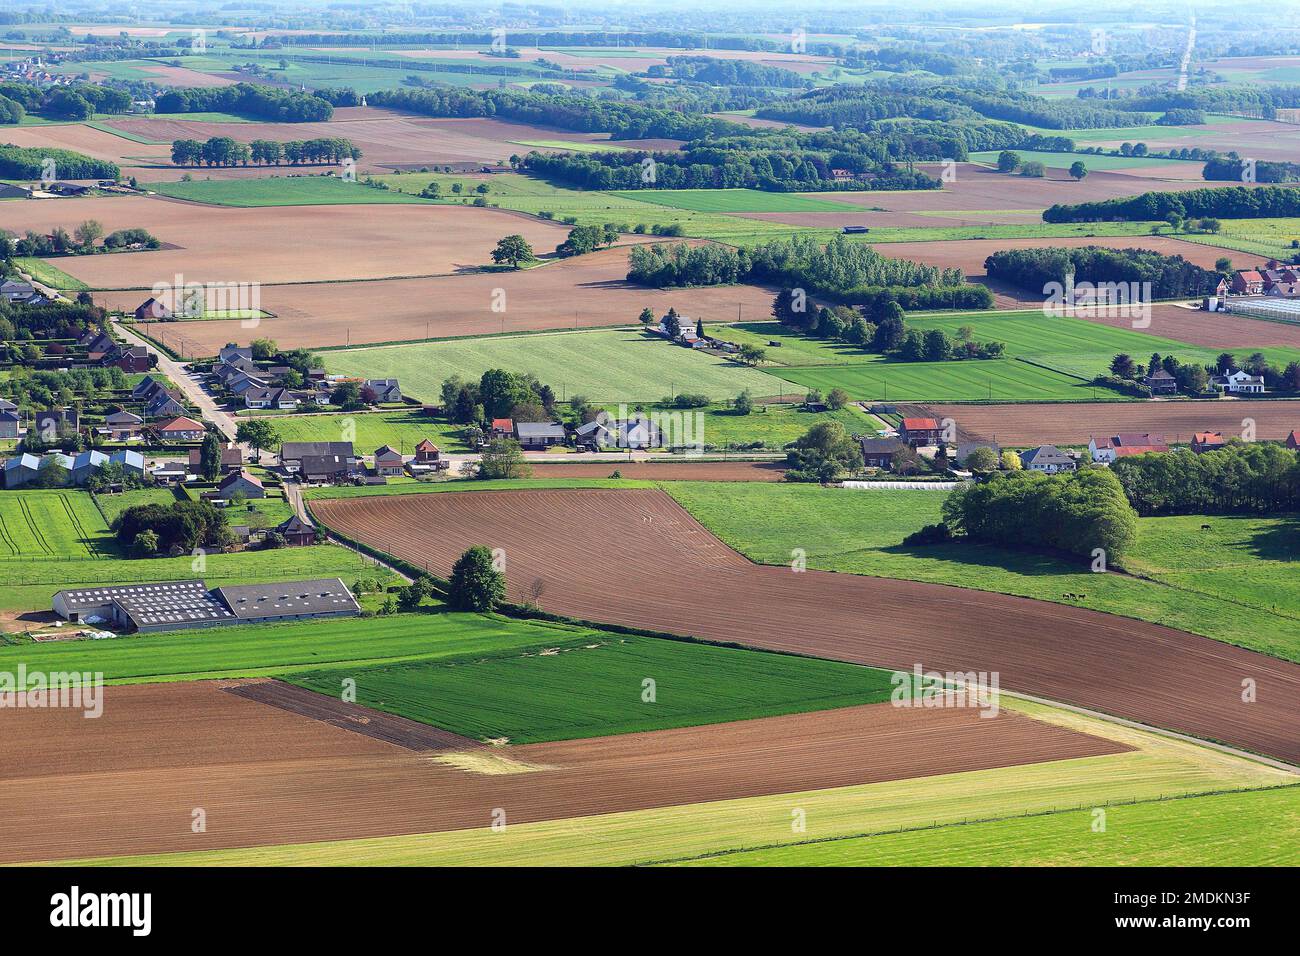 Villages et fermes dans un paysage de campagne au printemps, photo aérienne, Belgique, Vlaams-Brabant, Demerbroeken, Zichem Banque D'Images